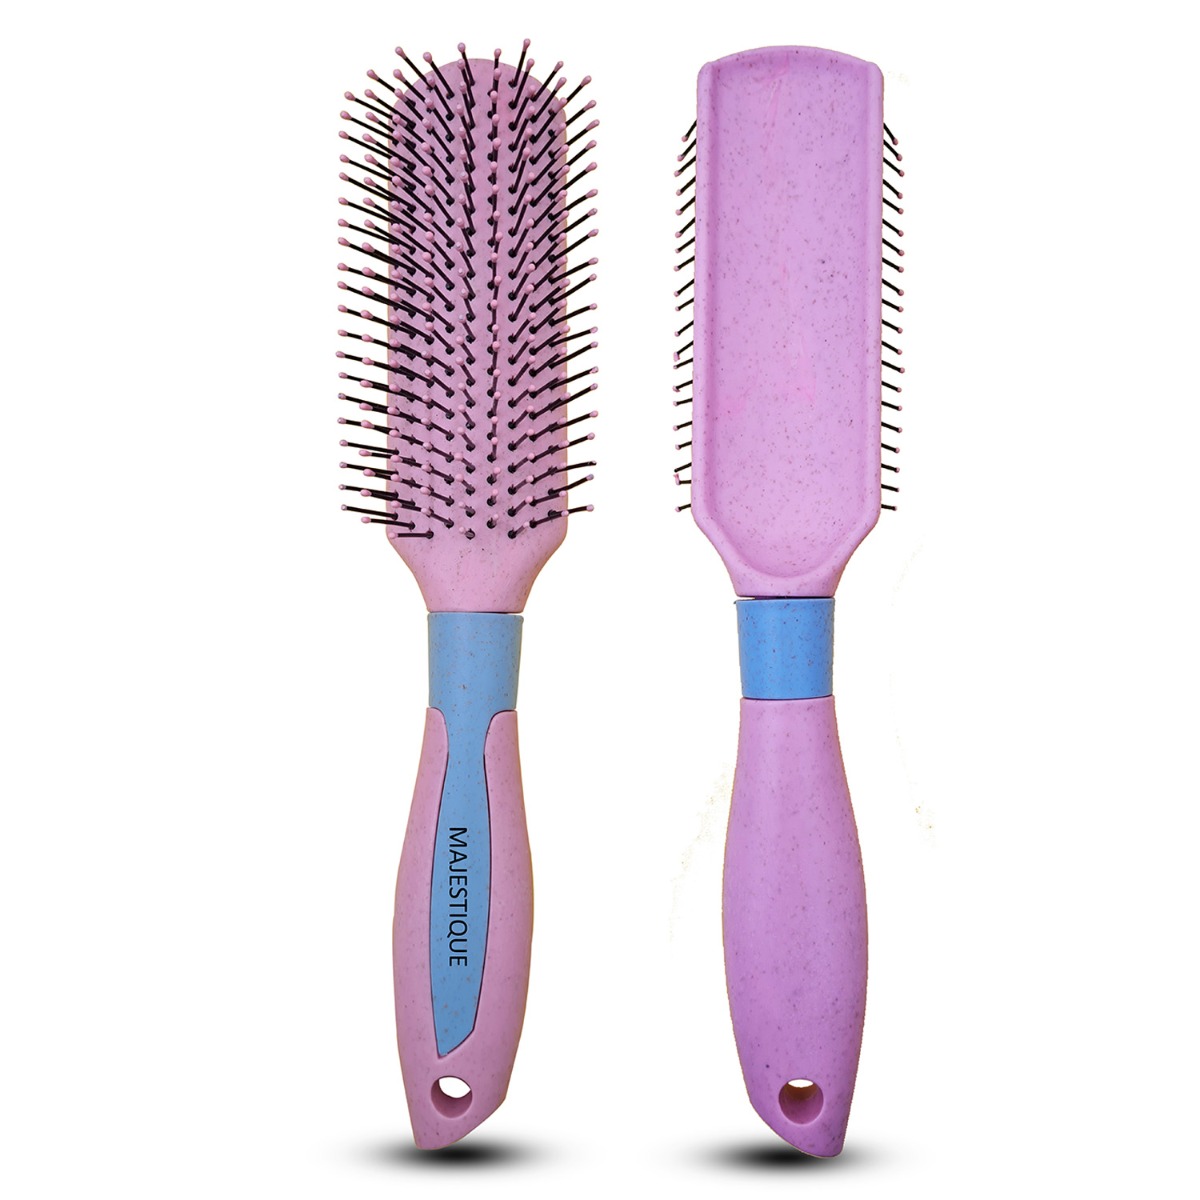 Majestique Professional Nylon Bristle All - Purpose Hair Brush. 1Pc